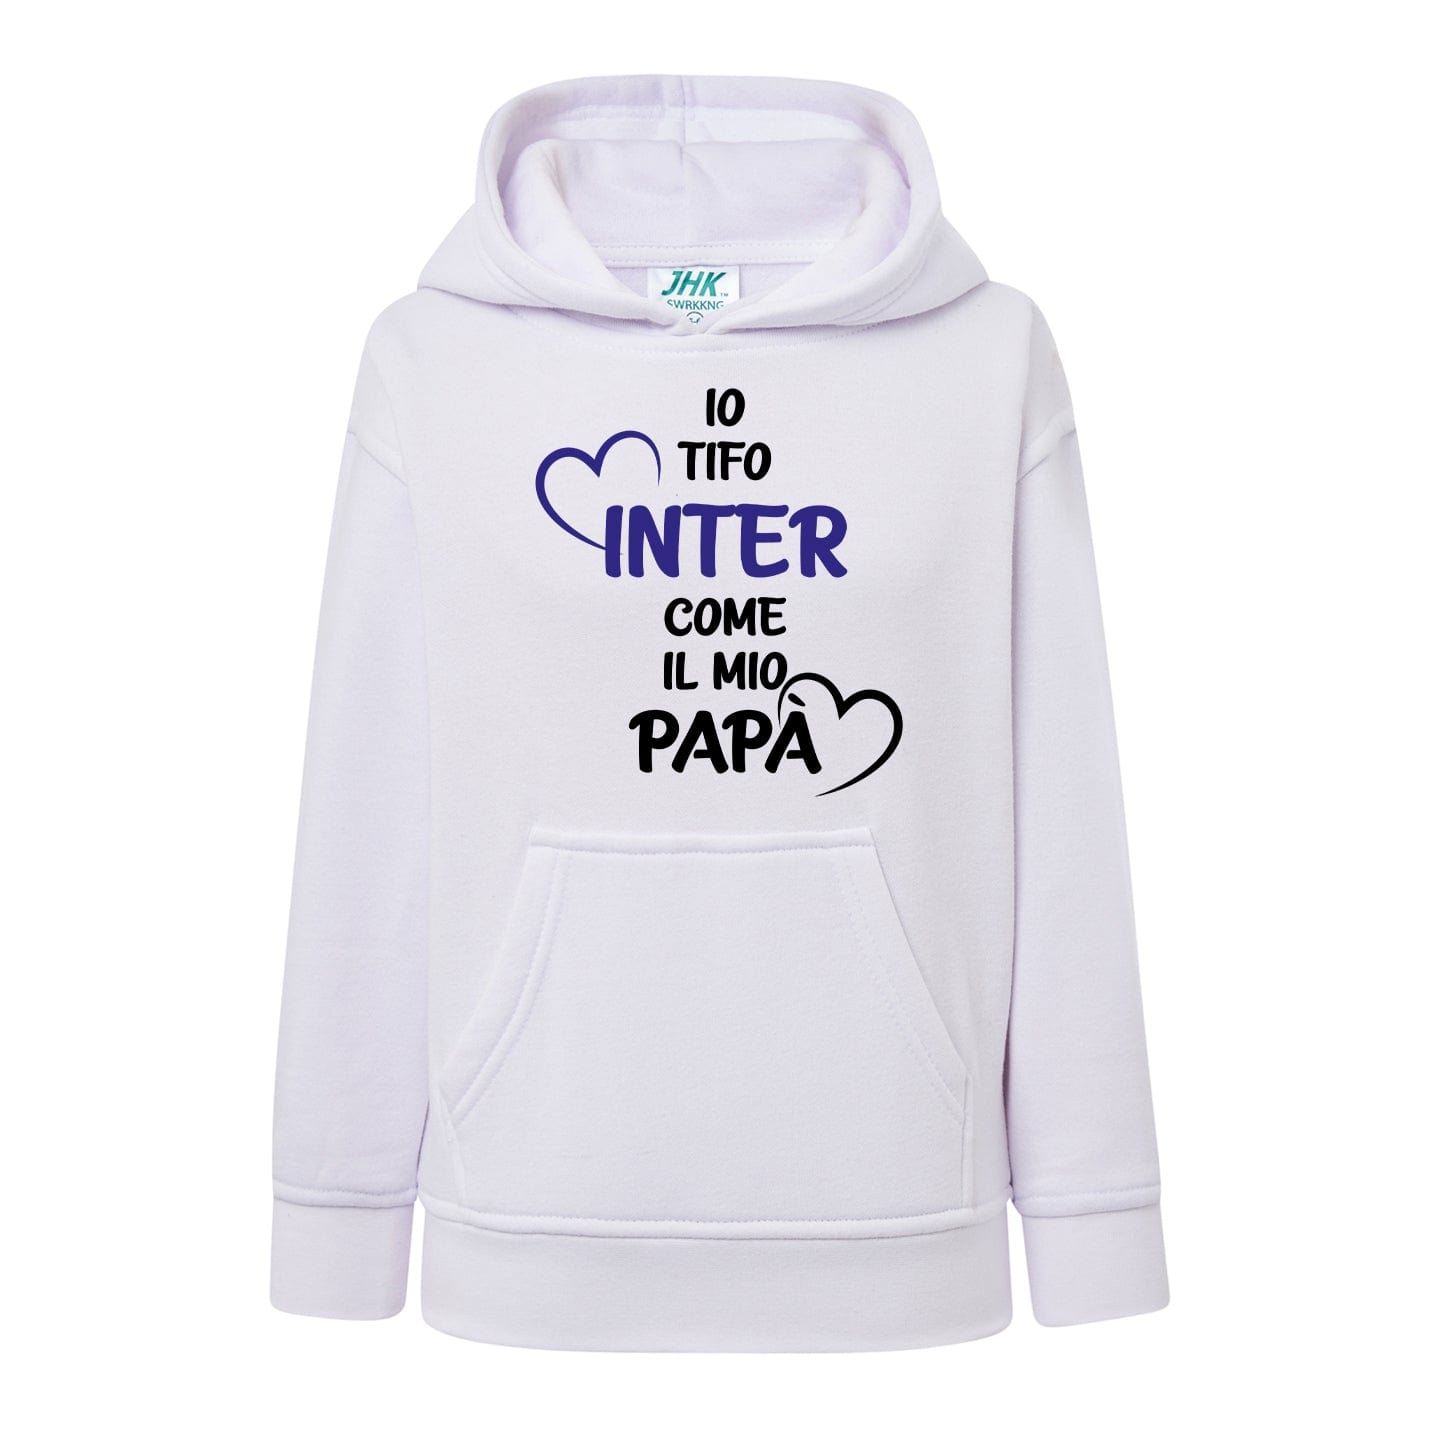 Io tifo Inter come il mio papà